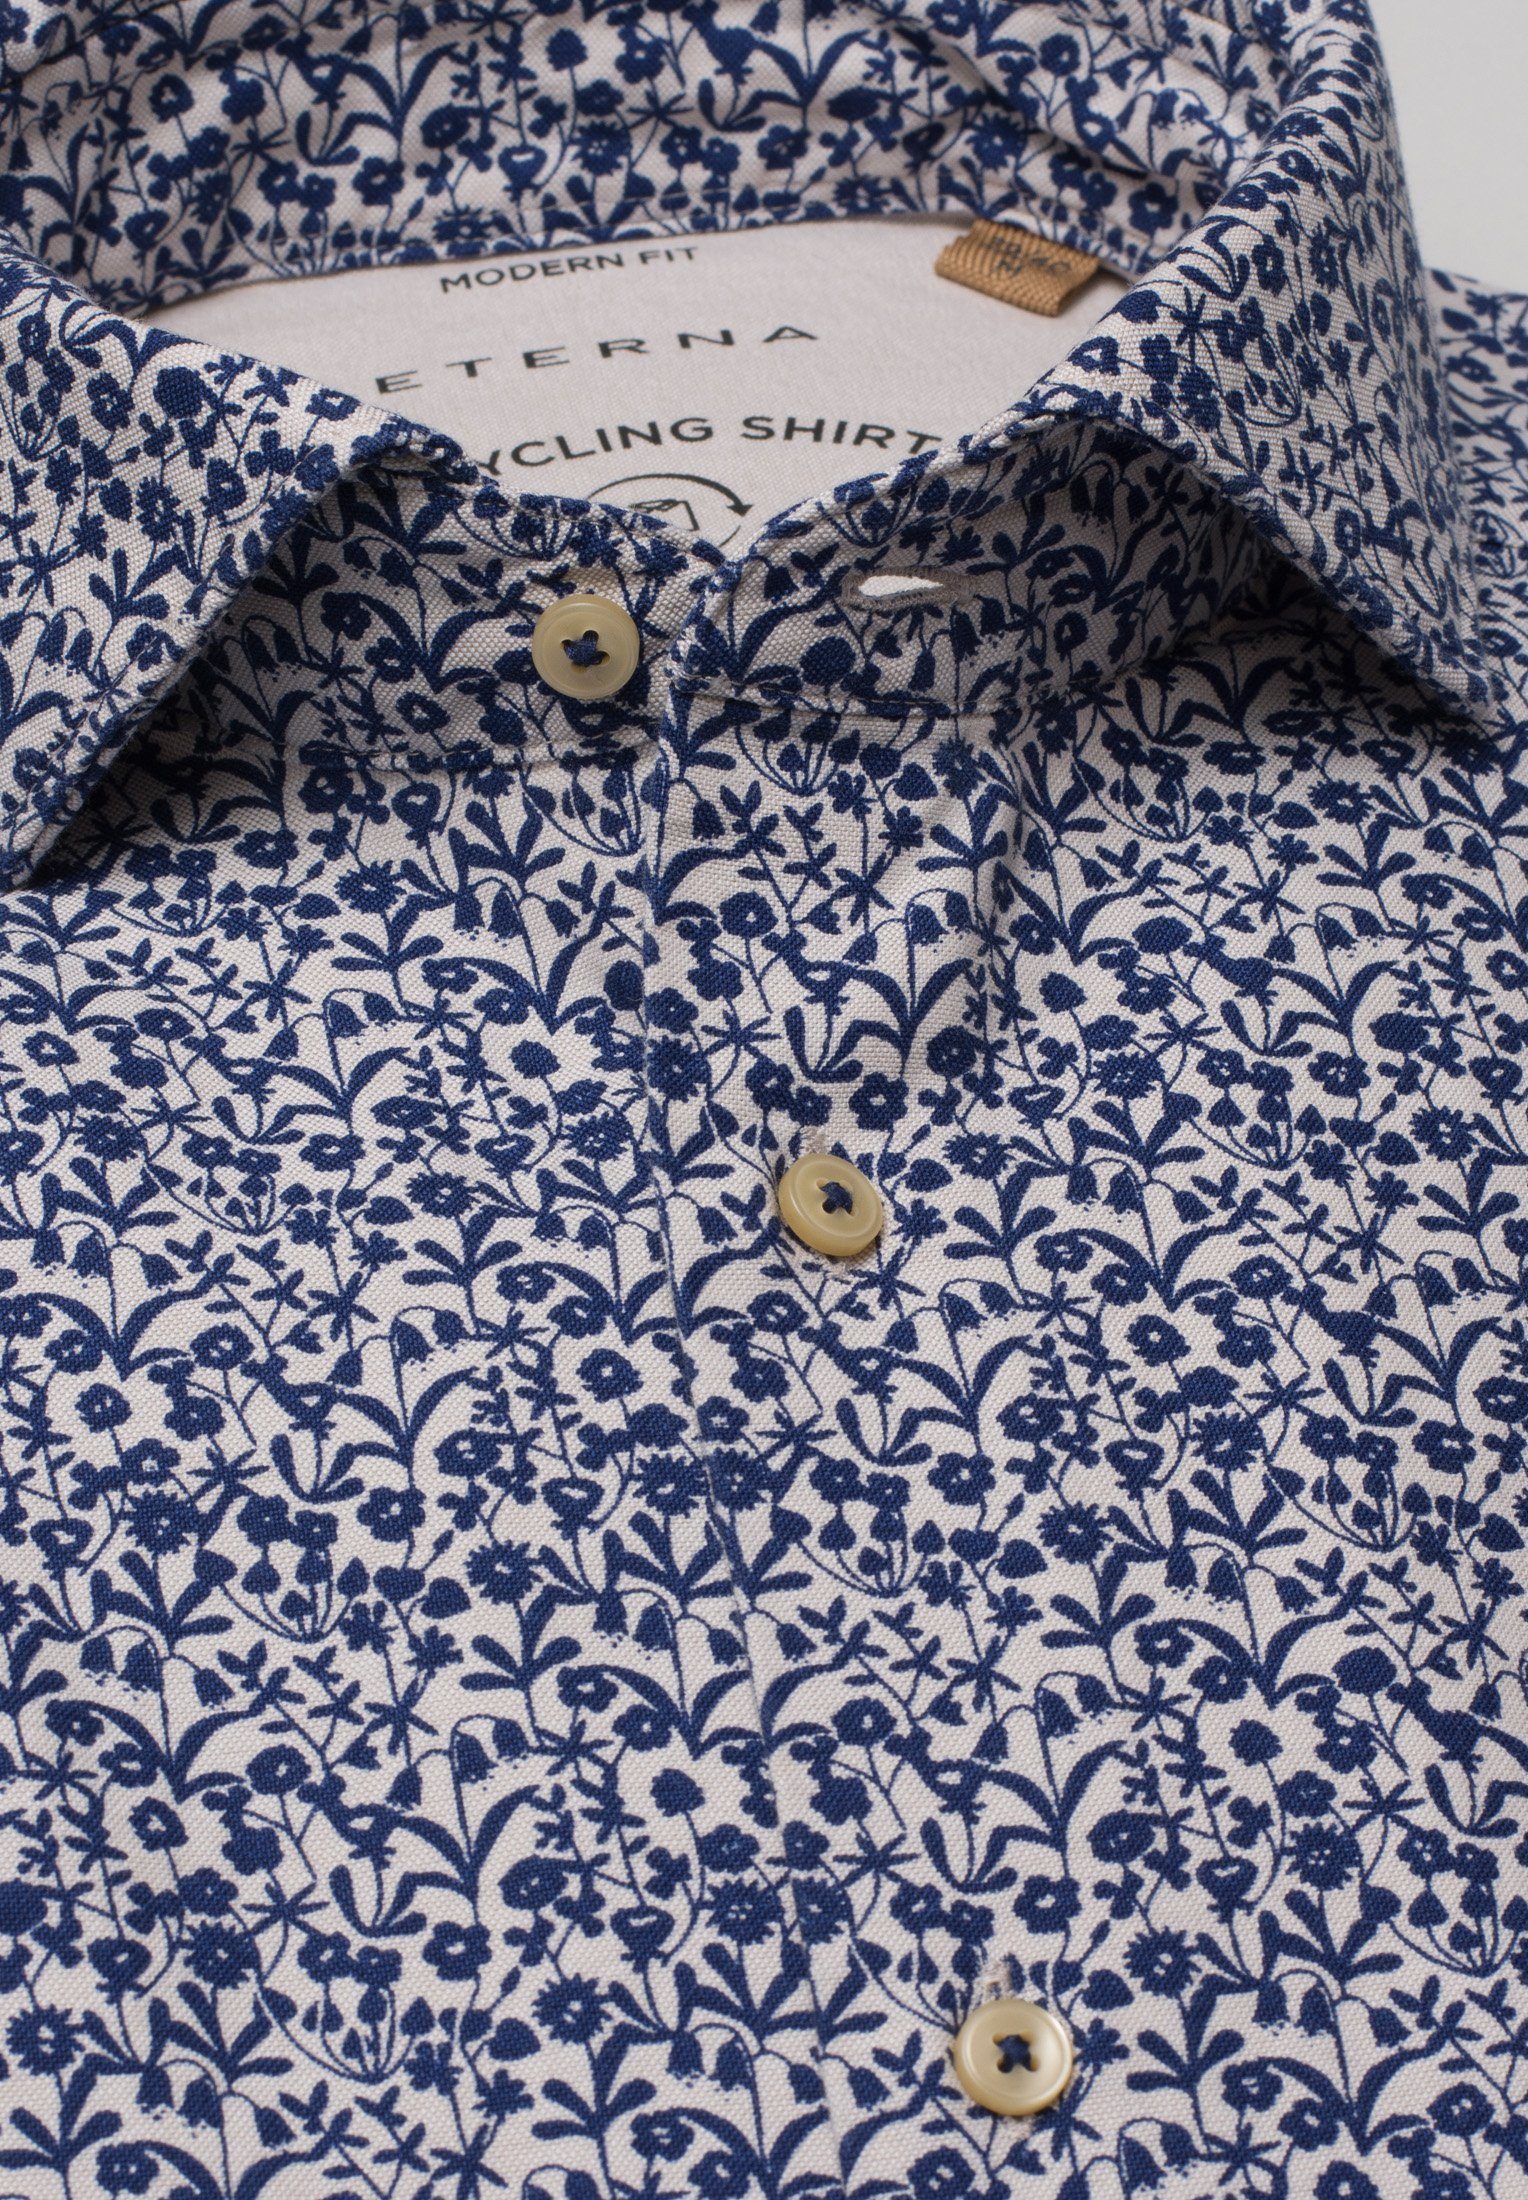 blau-weiß Langarm Hemd floral UPCYCLING FIT Klassische floral Bluse REGULAR blau-weiss ETERNA 2431-18-VS Eterna